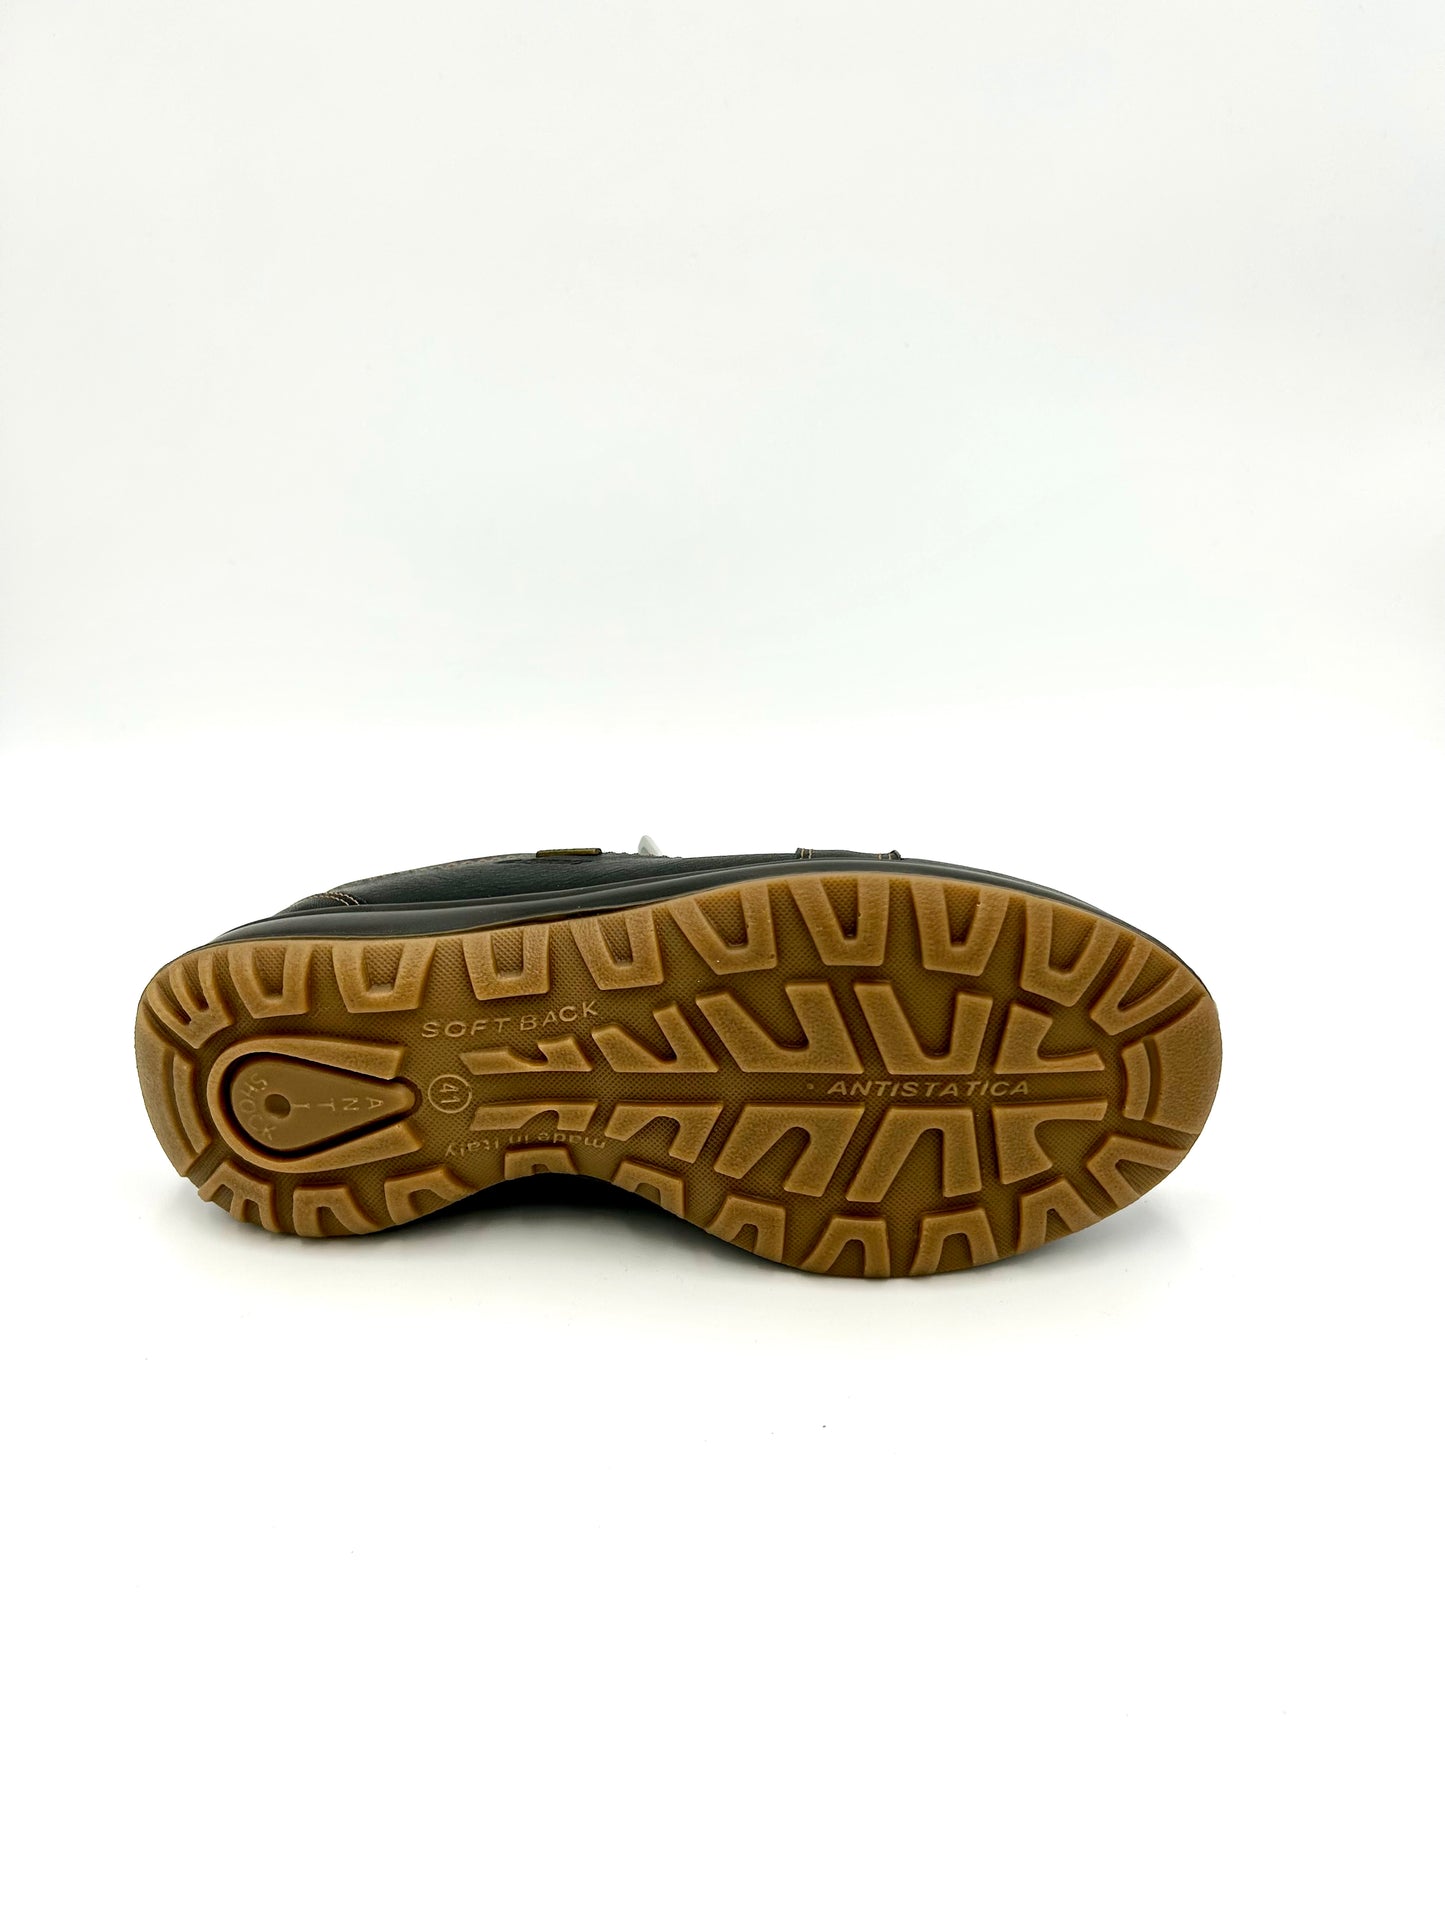 Grisport ACTIVE (gritex) Sneaker con lacci ed inserti elasticizzata - in pelle marrone - Grisport